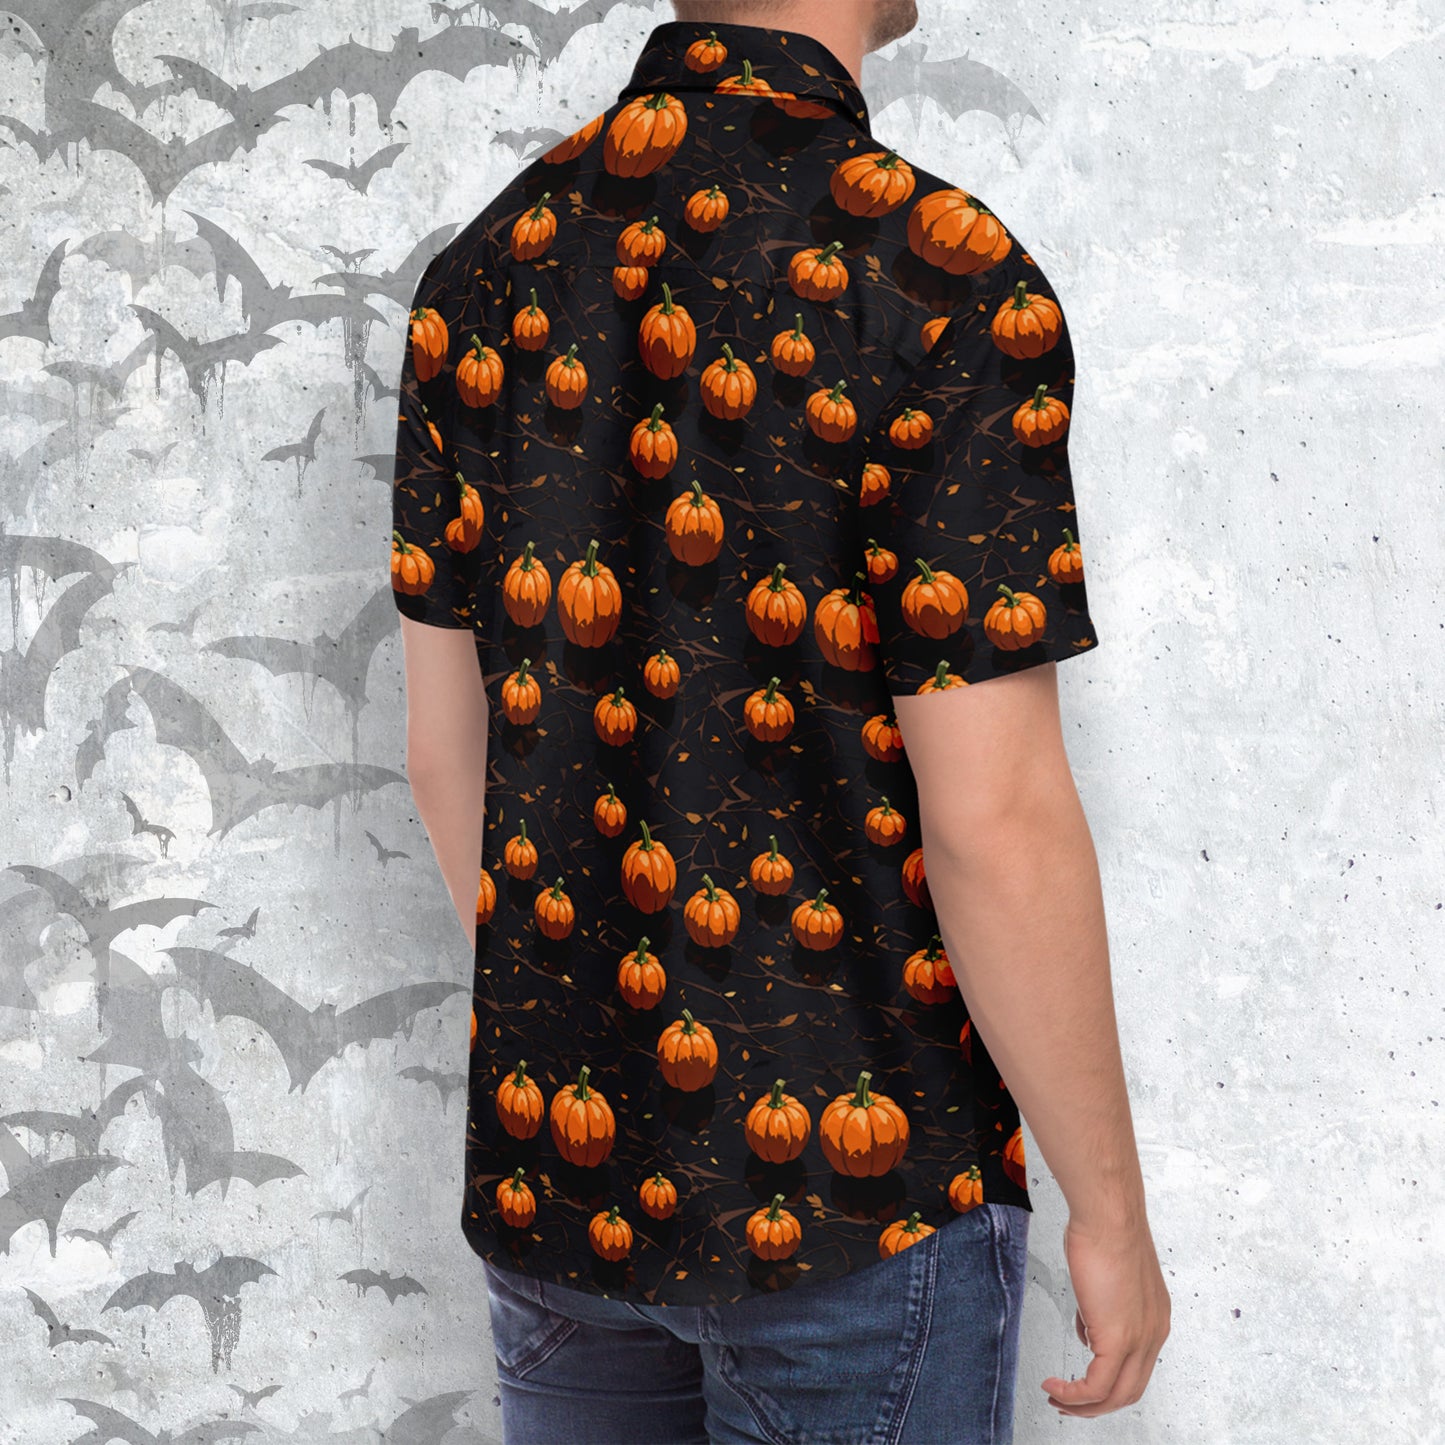 Halloween Fiest Short Sleeve Button-up Shirt